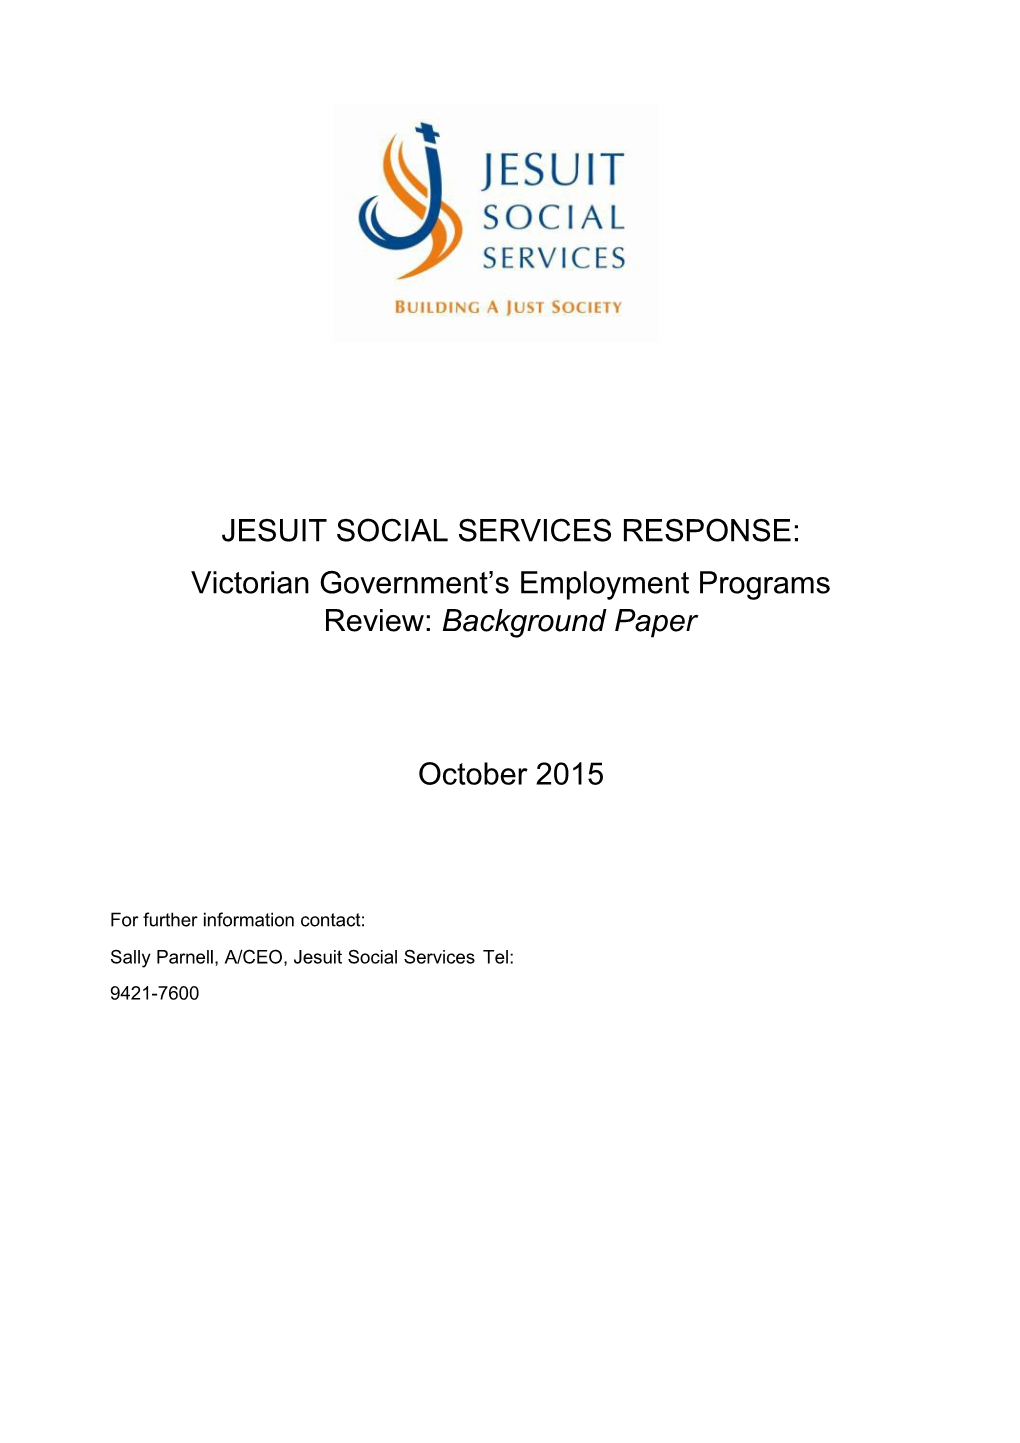 Jesuit Social Services Response